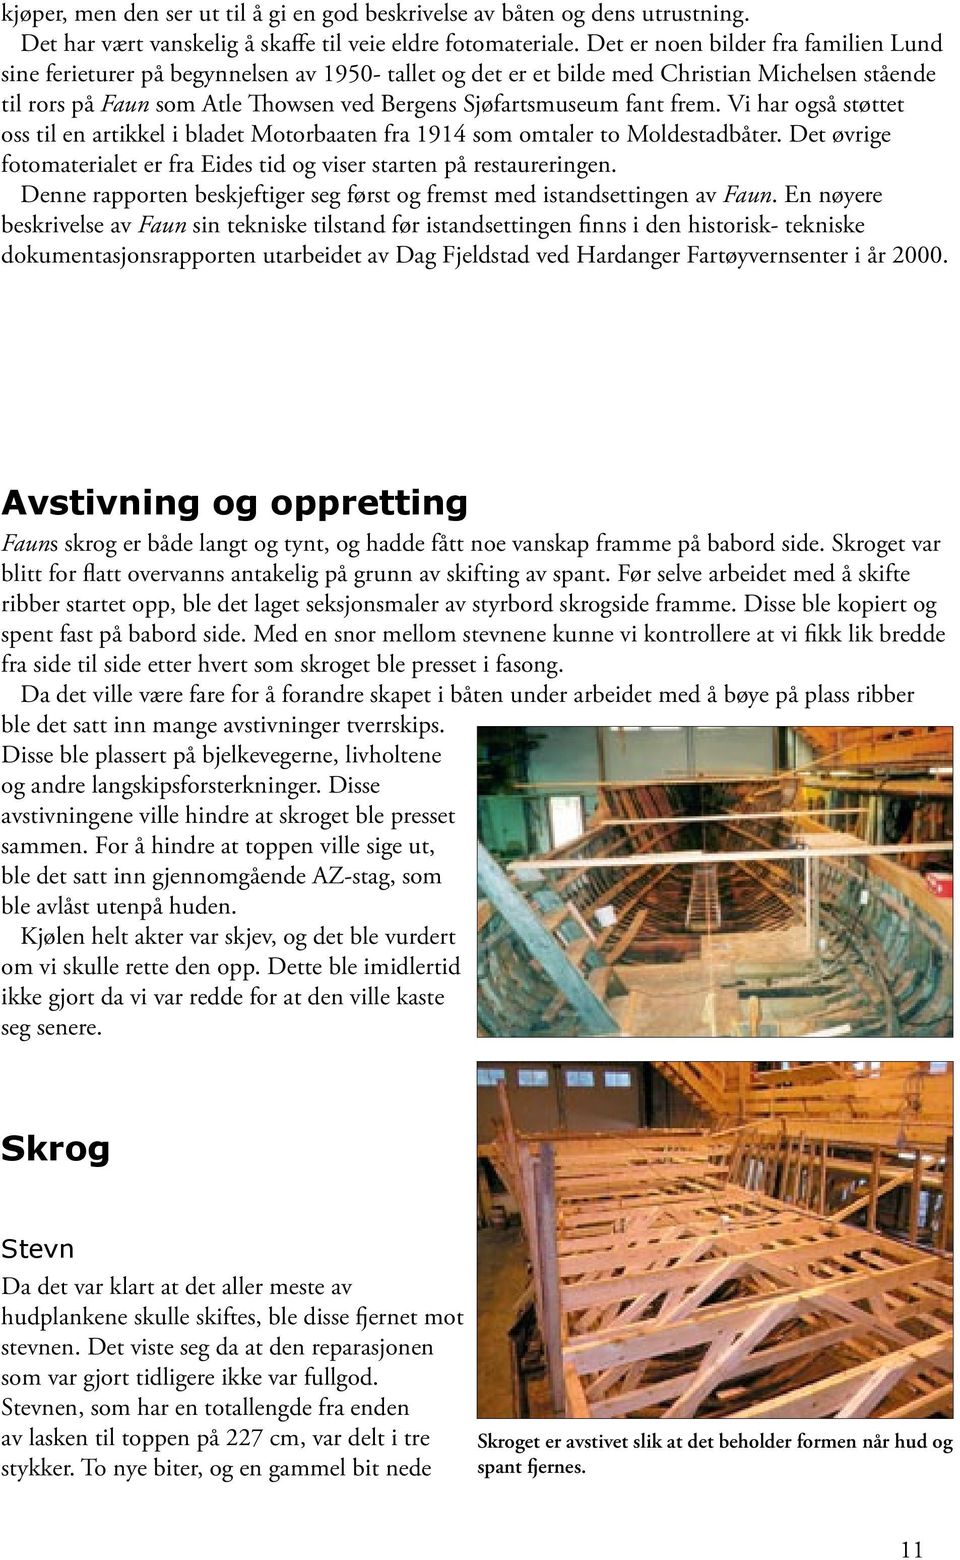 fant frem. Vi har også støttet oss til en artikkel i bladet Motorbaaten fra 1914 som omtaler to Moldestadbåter. Det øvrige fotomaterialet er fra Eides tid og viser starten på restaureringen.